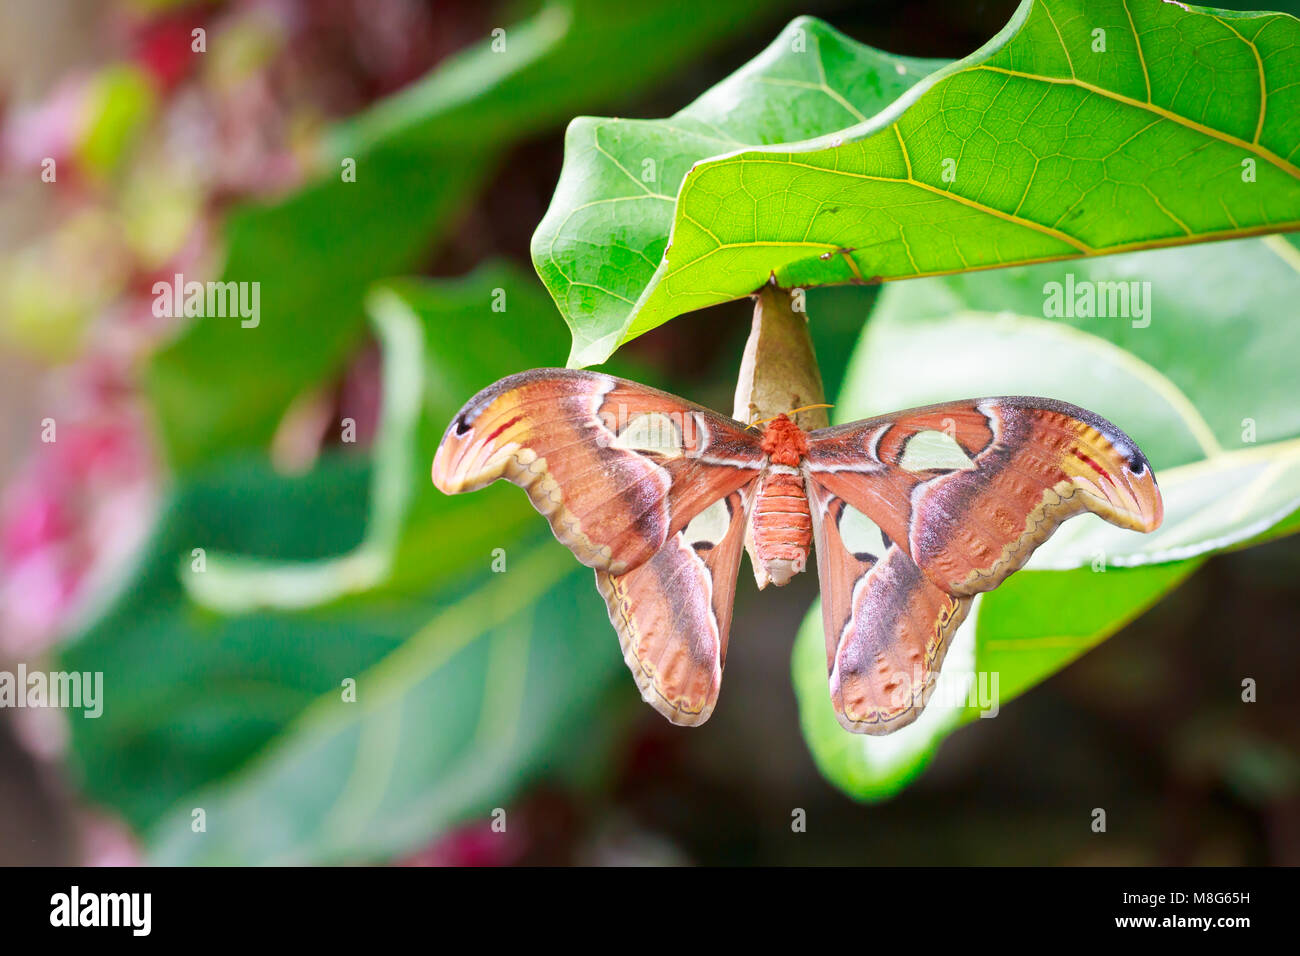 Große Atlas moth tropischer Schmetterling (Attacus Atlas) ruht auf einer großen, grünen Blatt im Dschungel Vegetation. Stockfoto